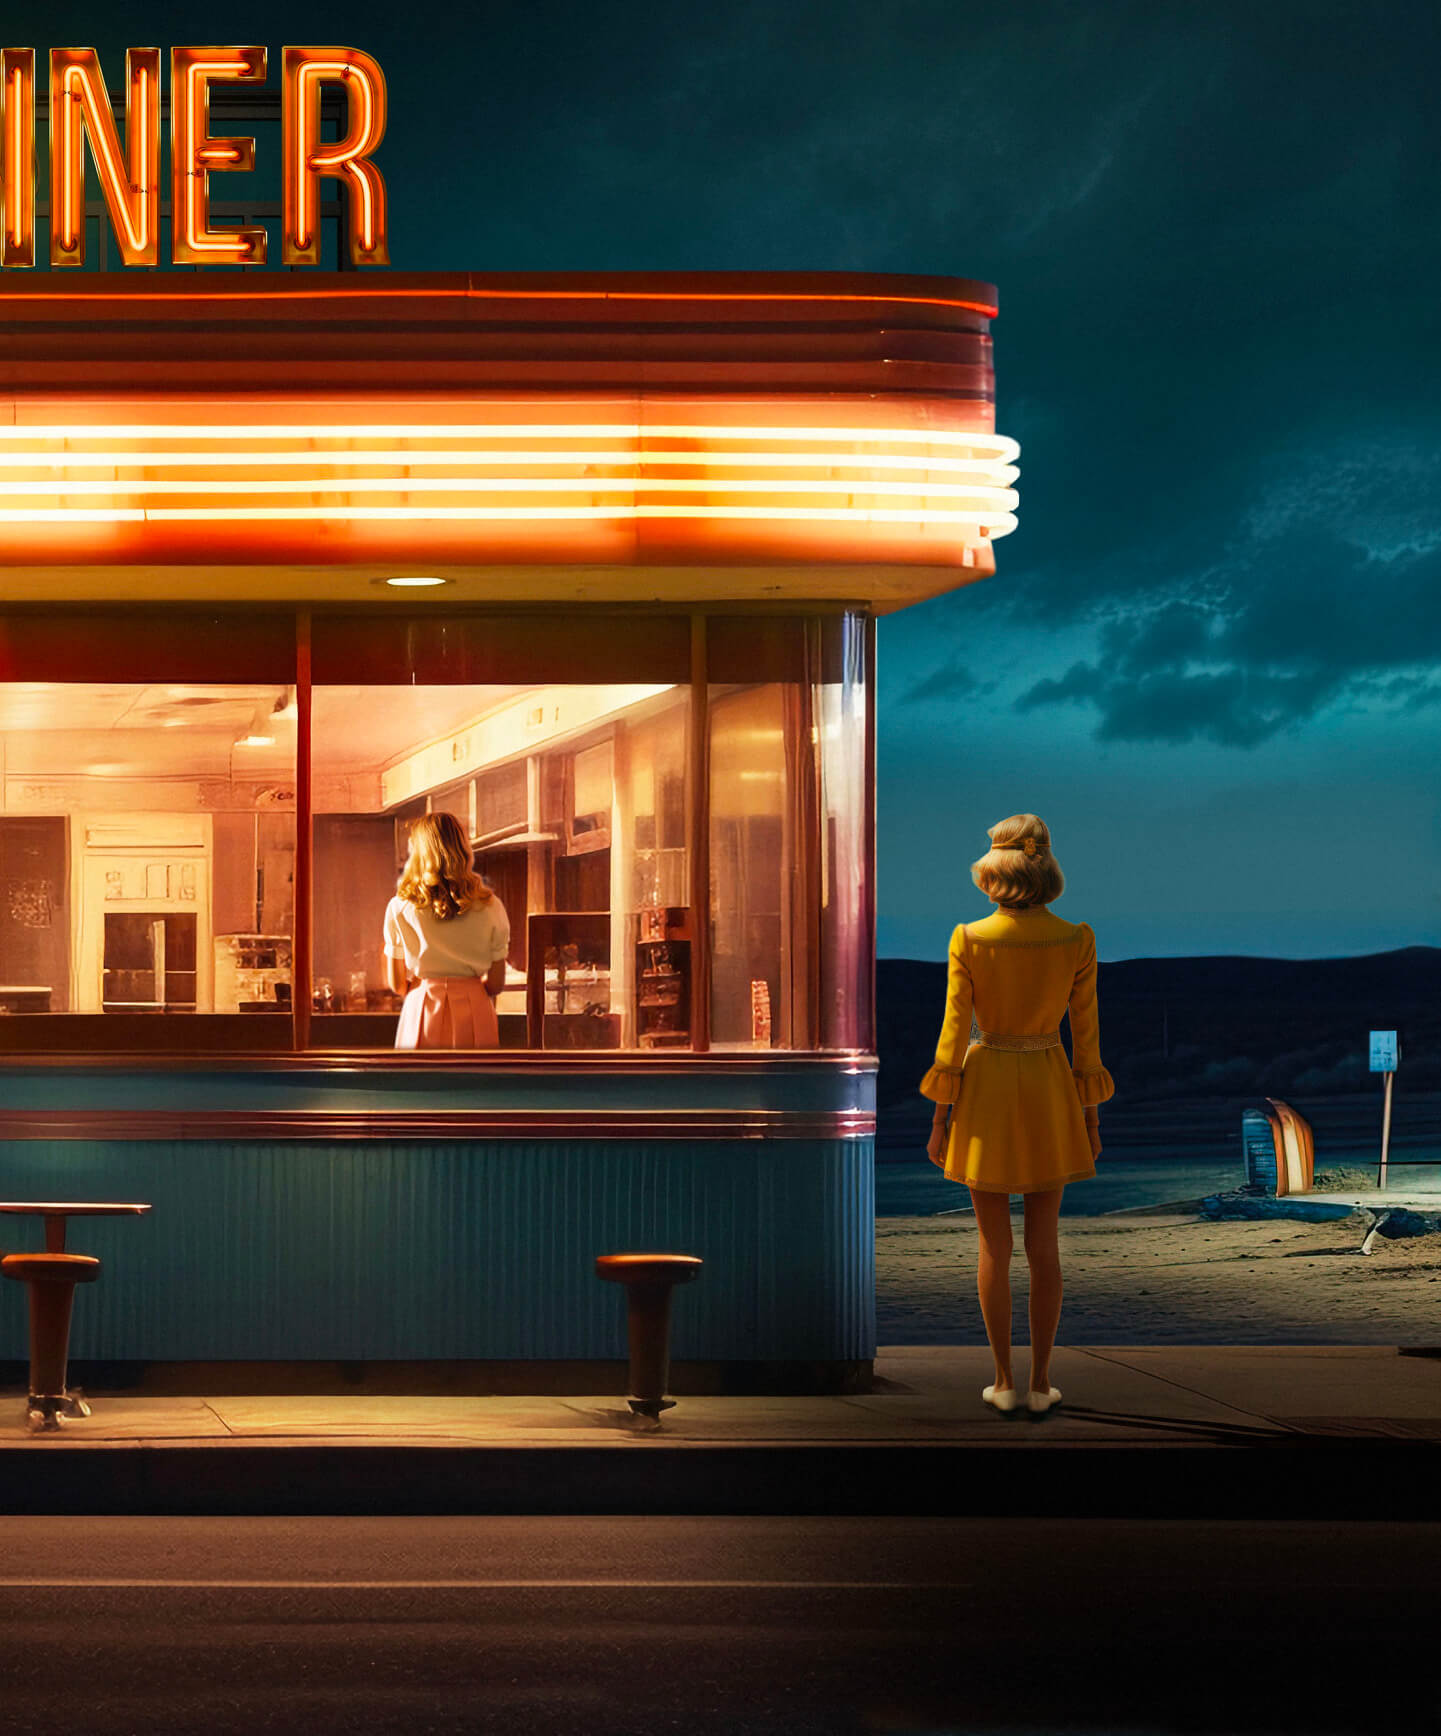 Dämmerung in einem Retro-Diner mit Neonlichtern und einer Frau in Gelb, die beobachtet.